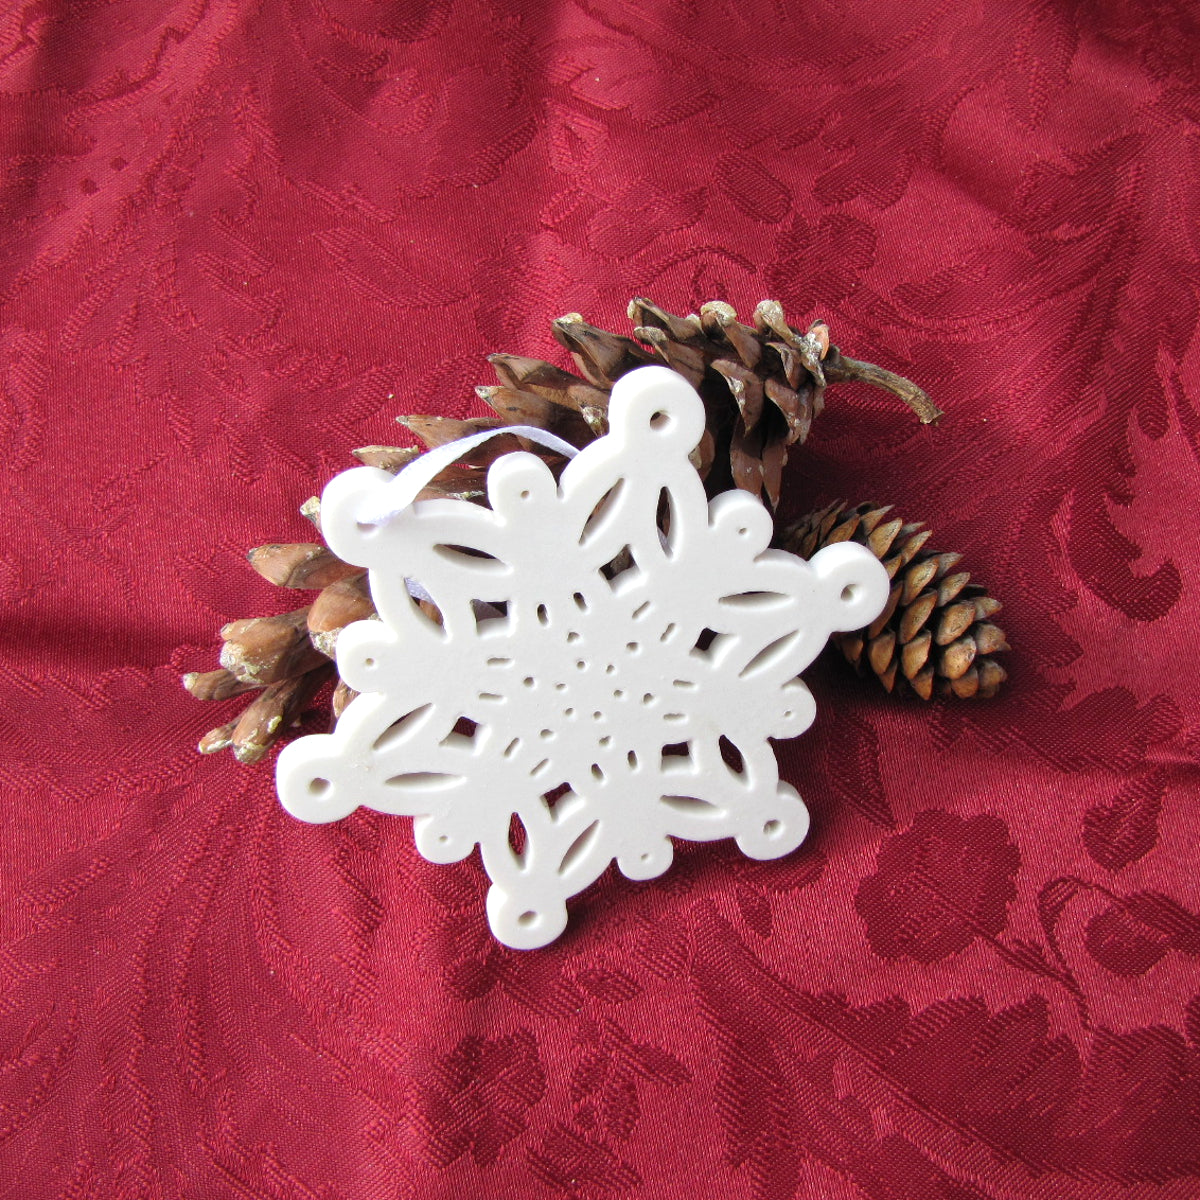 Porcelain Snowflakes Ornaments